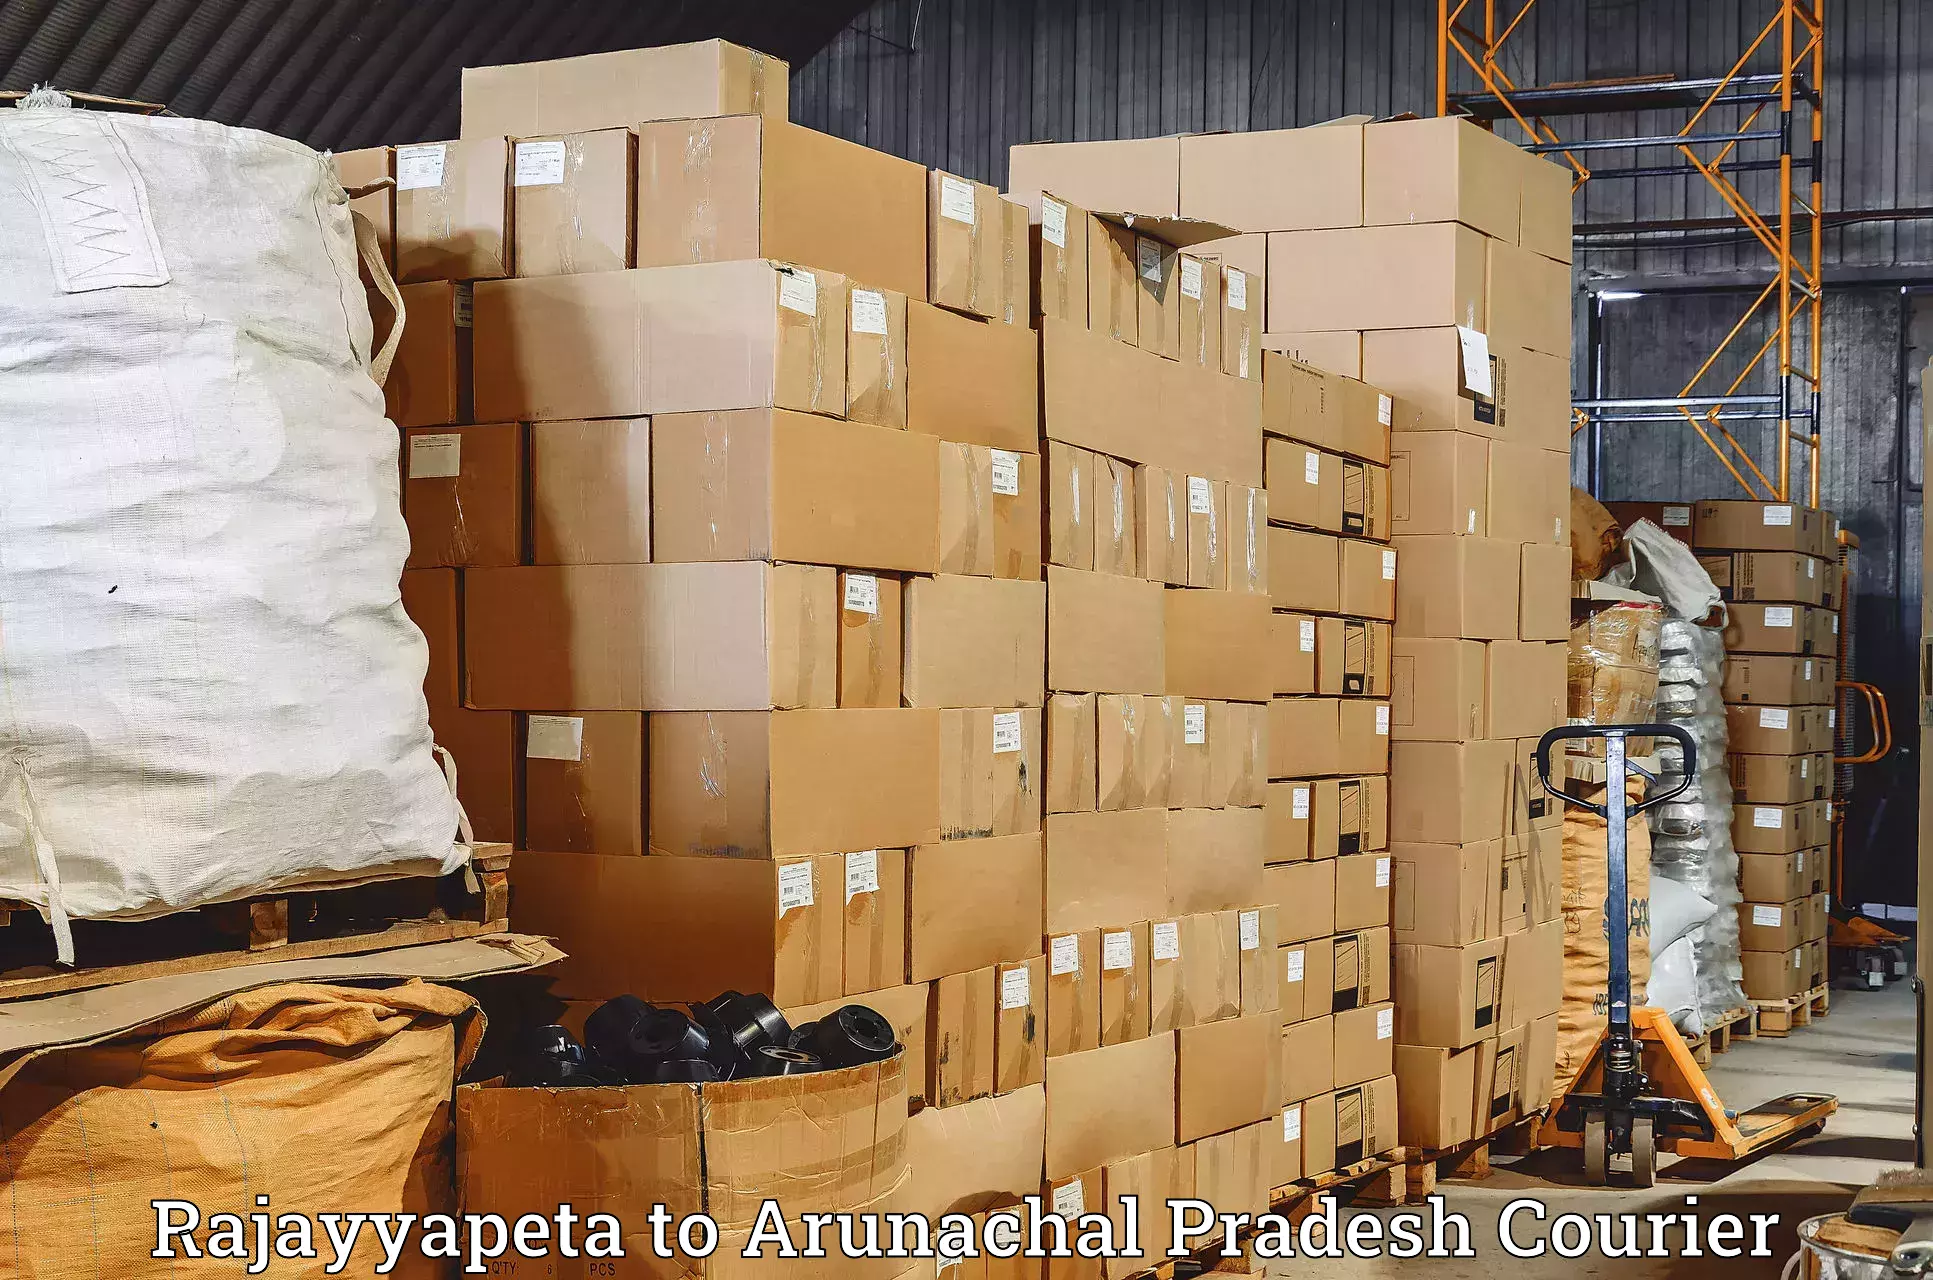 Digital shipping tools Rajayyapeta to Lower Subansiri